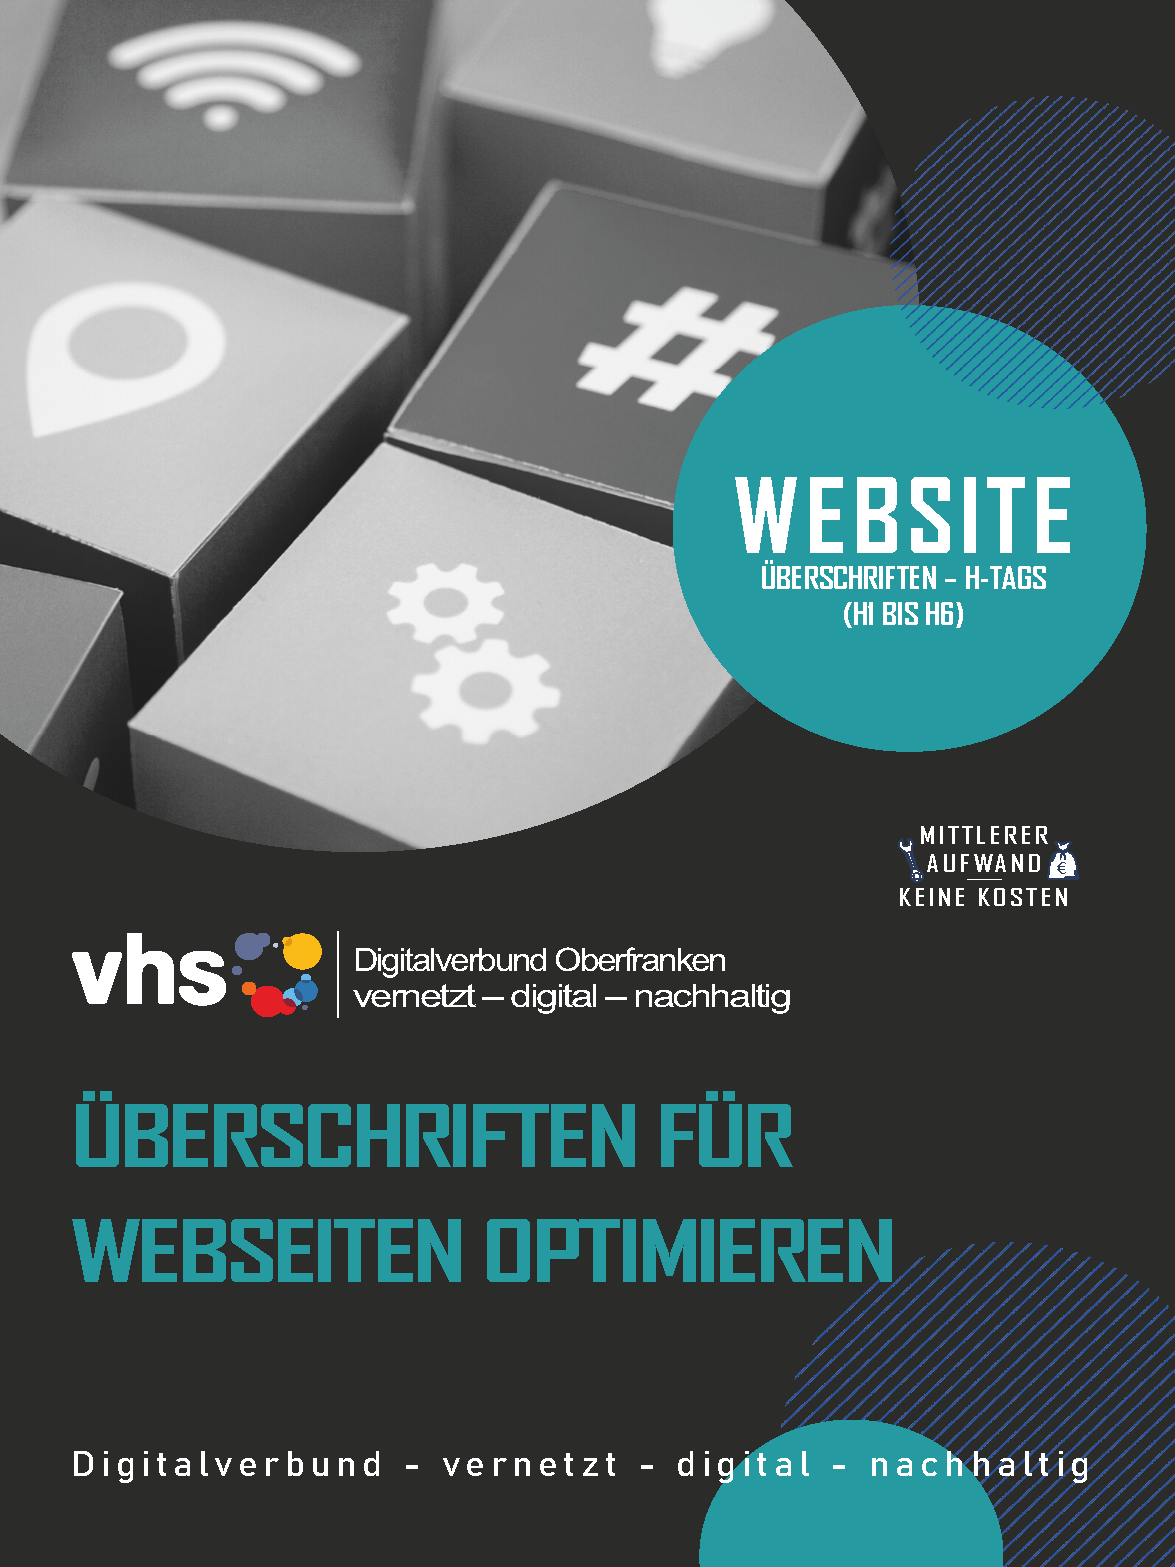 Deckblatt Marketing Digithekt: Website-Überschriften optimieren für SEO